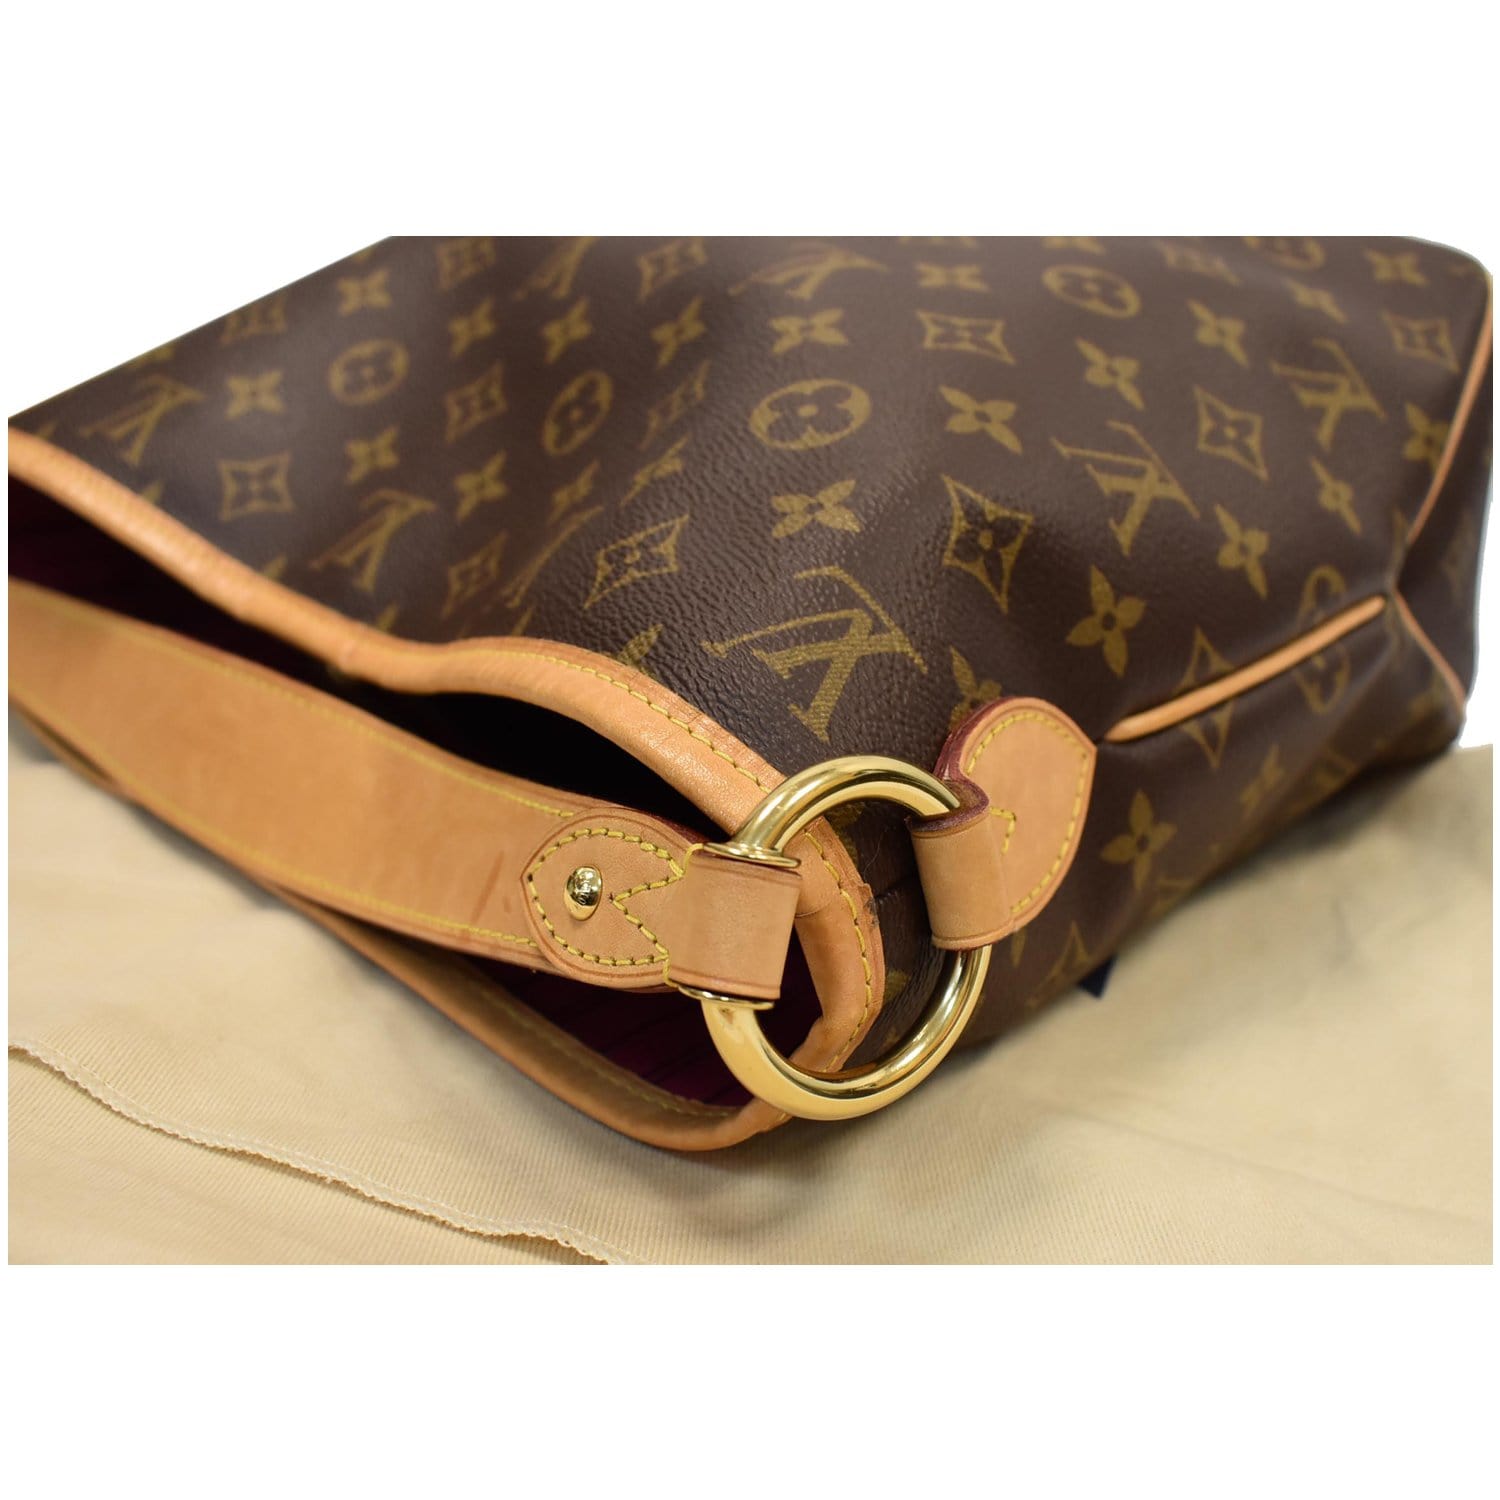 Louis Vuitton, Bags, Authentic Louis Vuitton Delightful Pm Shoulder Bag